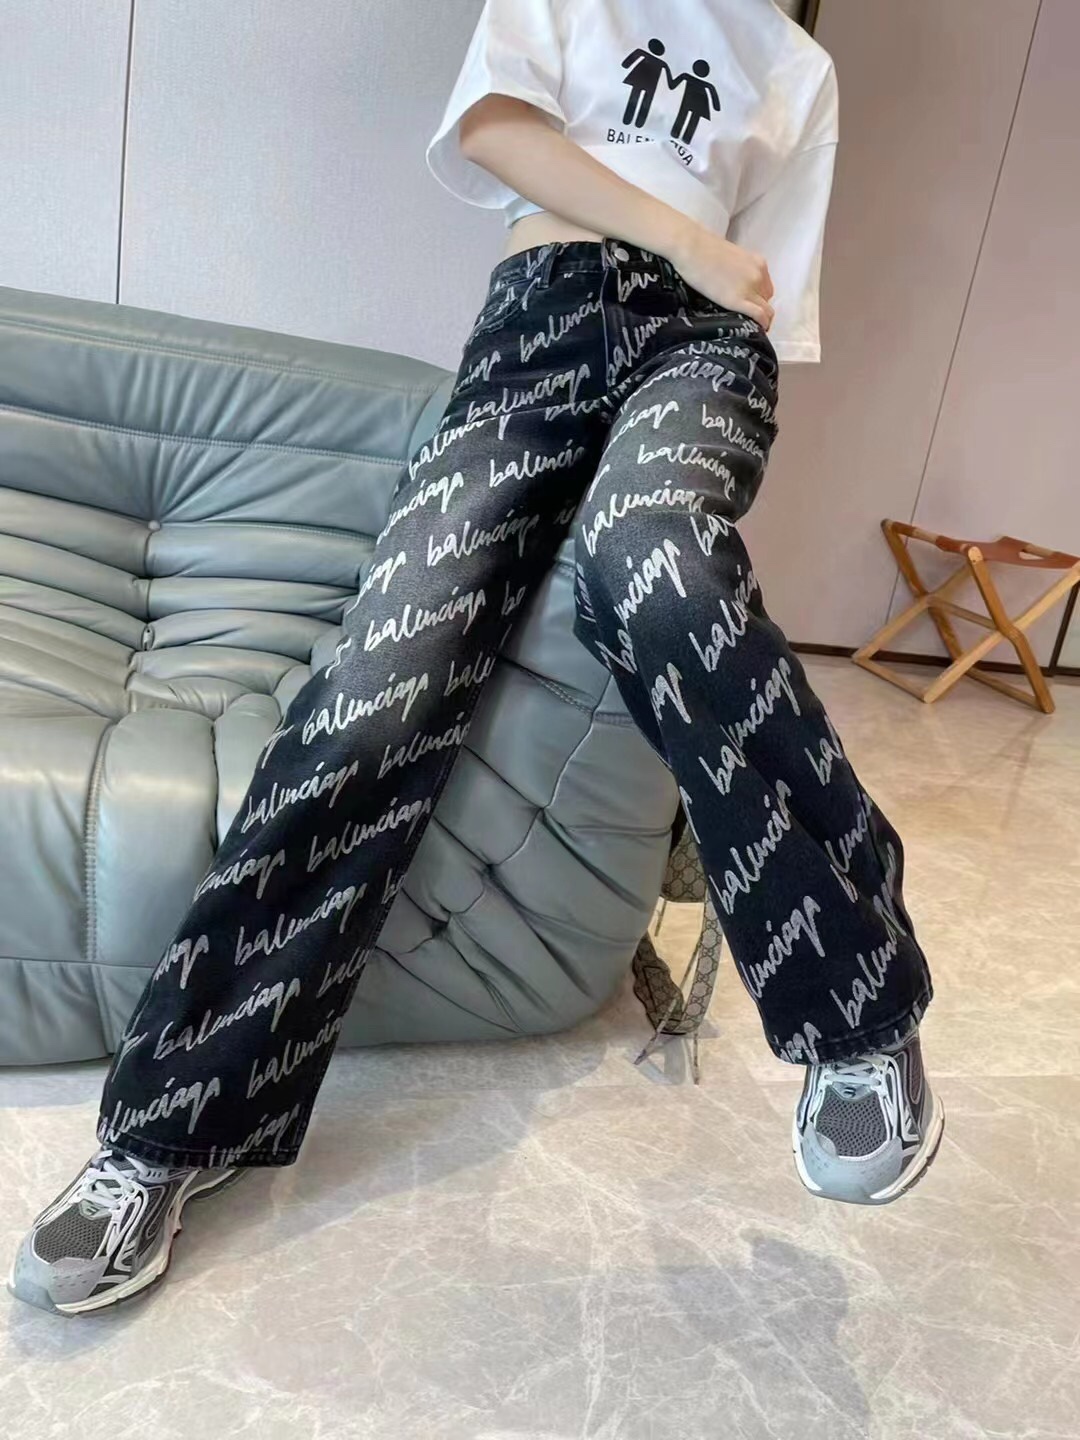 Balenciaga jeans printed with LOGO